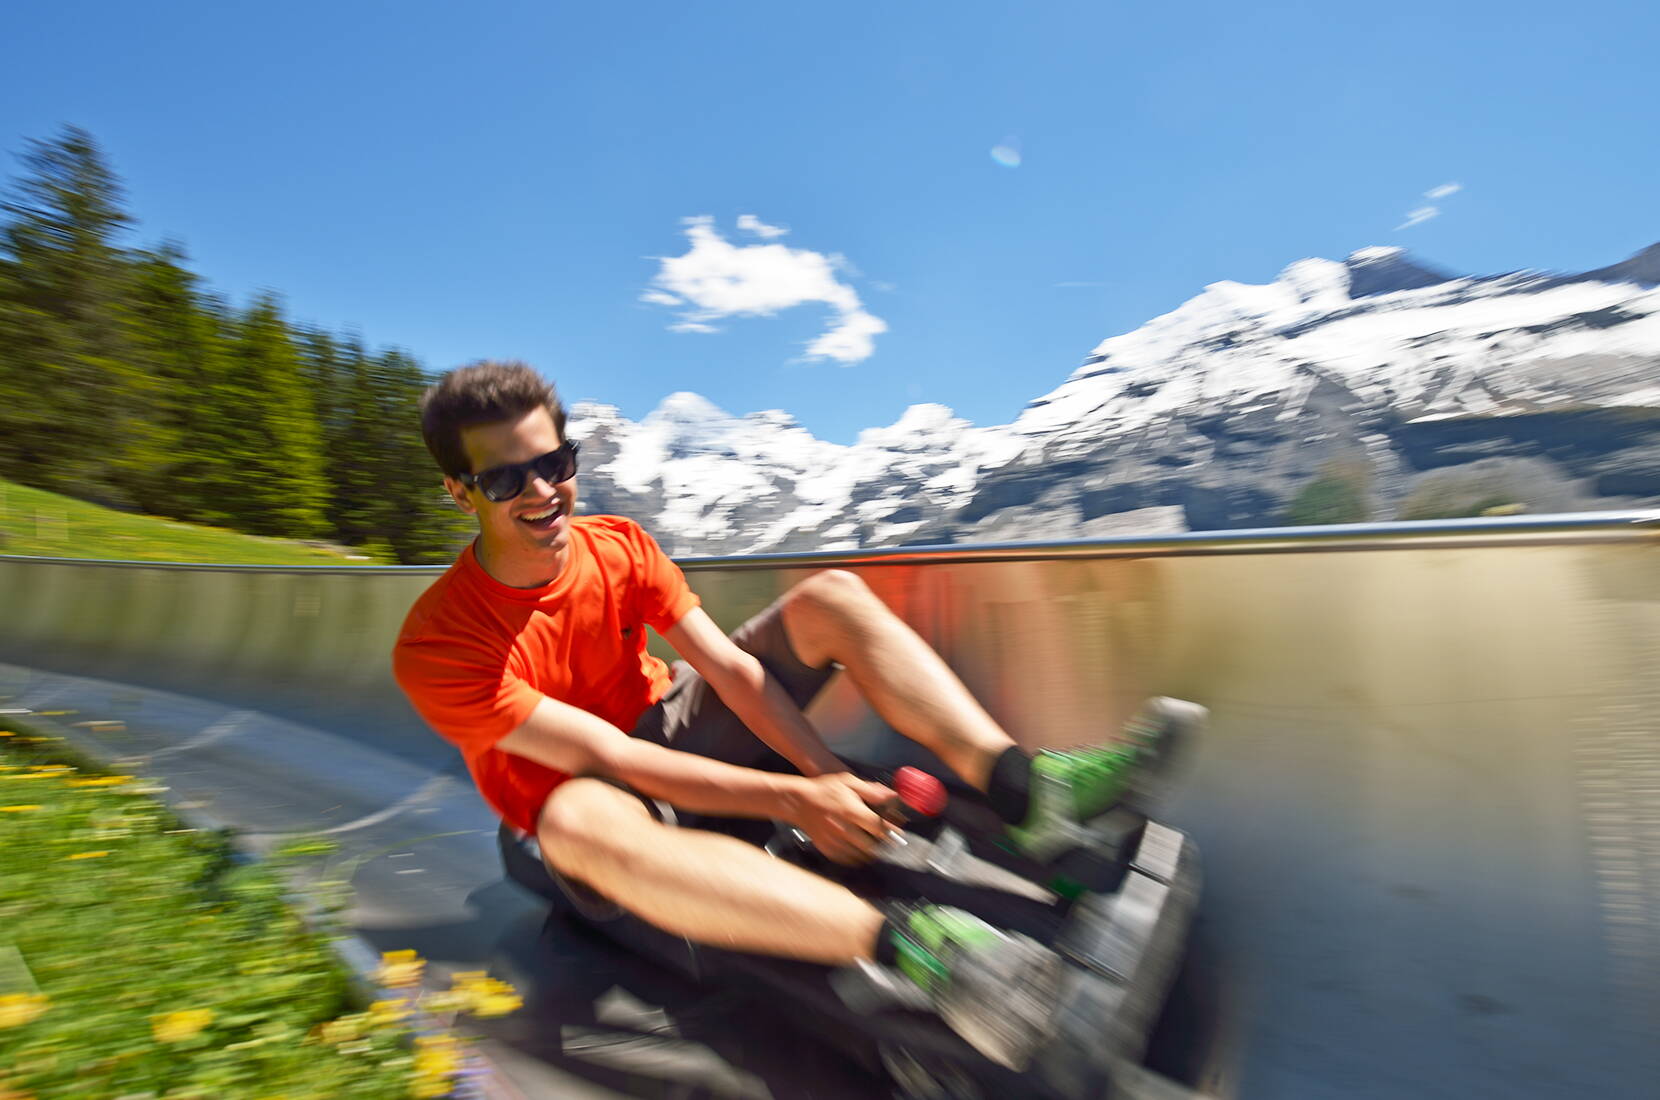 Buts d'excursion Berne – Excursion en famille sur la piste de luge d'été du lac d'Oeschinen. Une attraction pour petits et grands – que l'on soit seul ou à deux, c'est un vrai plaisir!